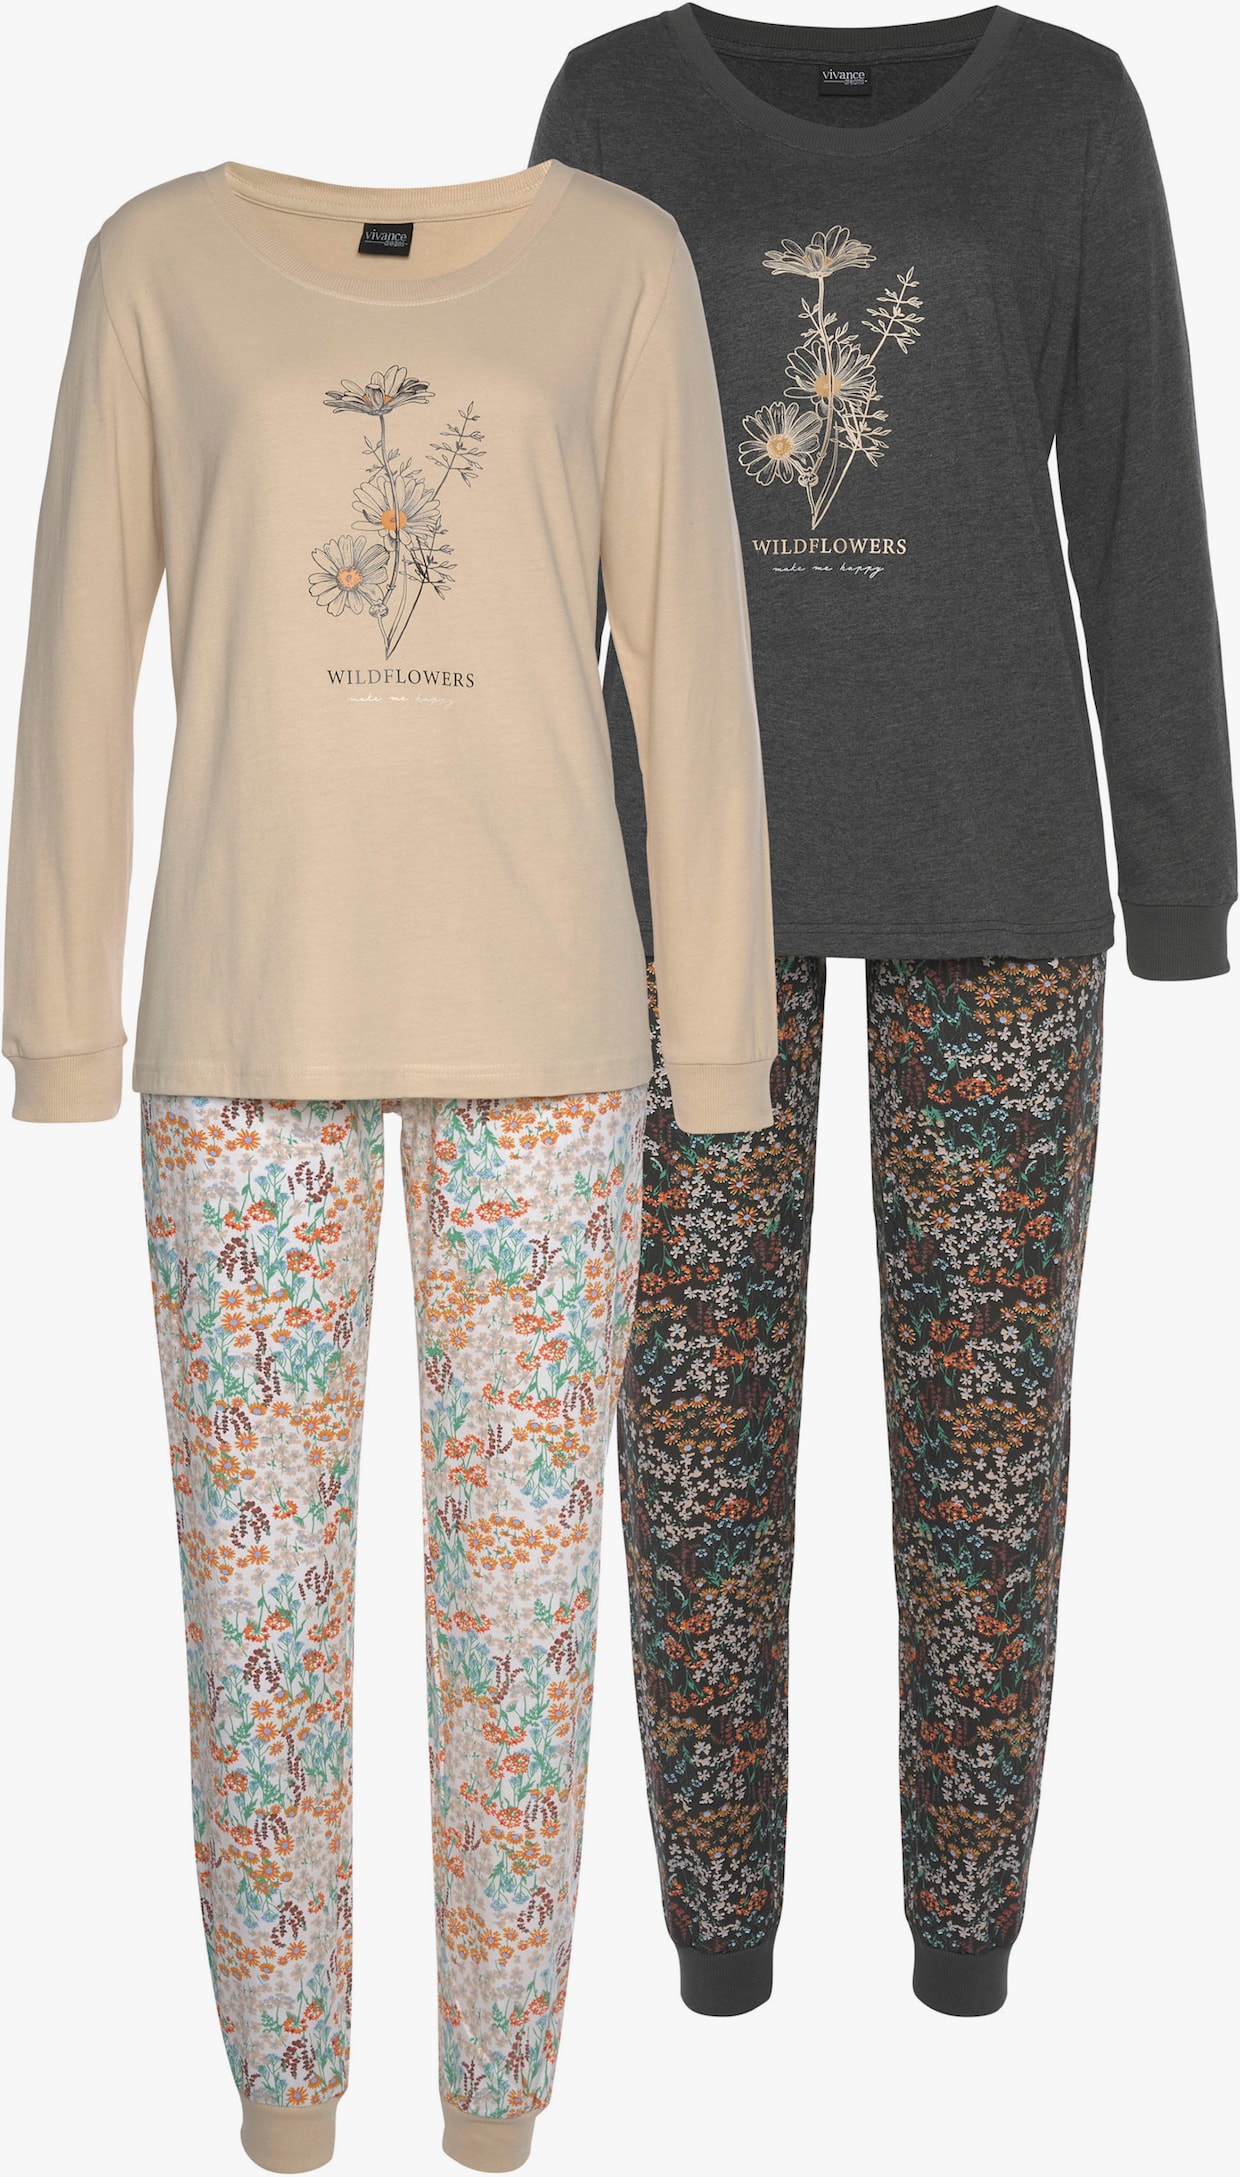 Vivance Dreams Pyjama - sable floral, gris foncé floral